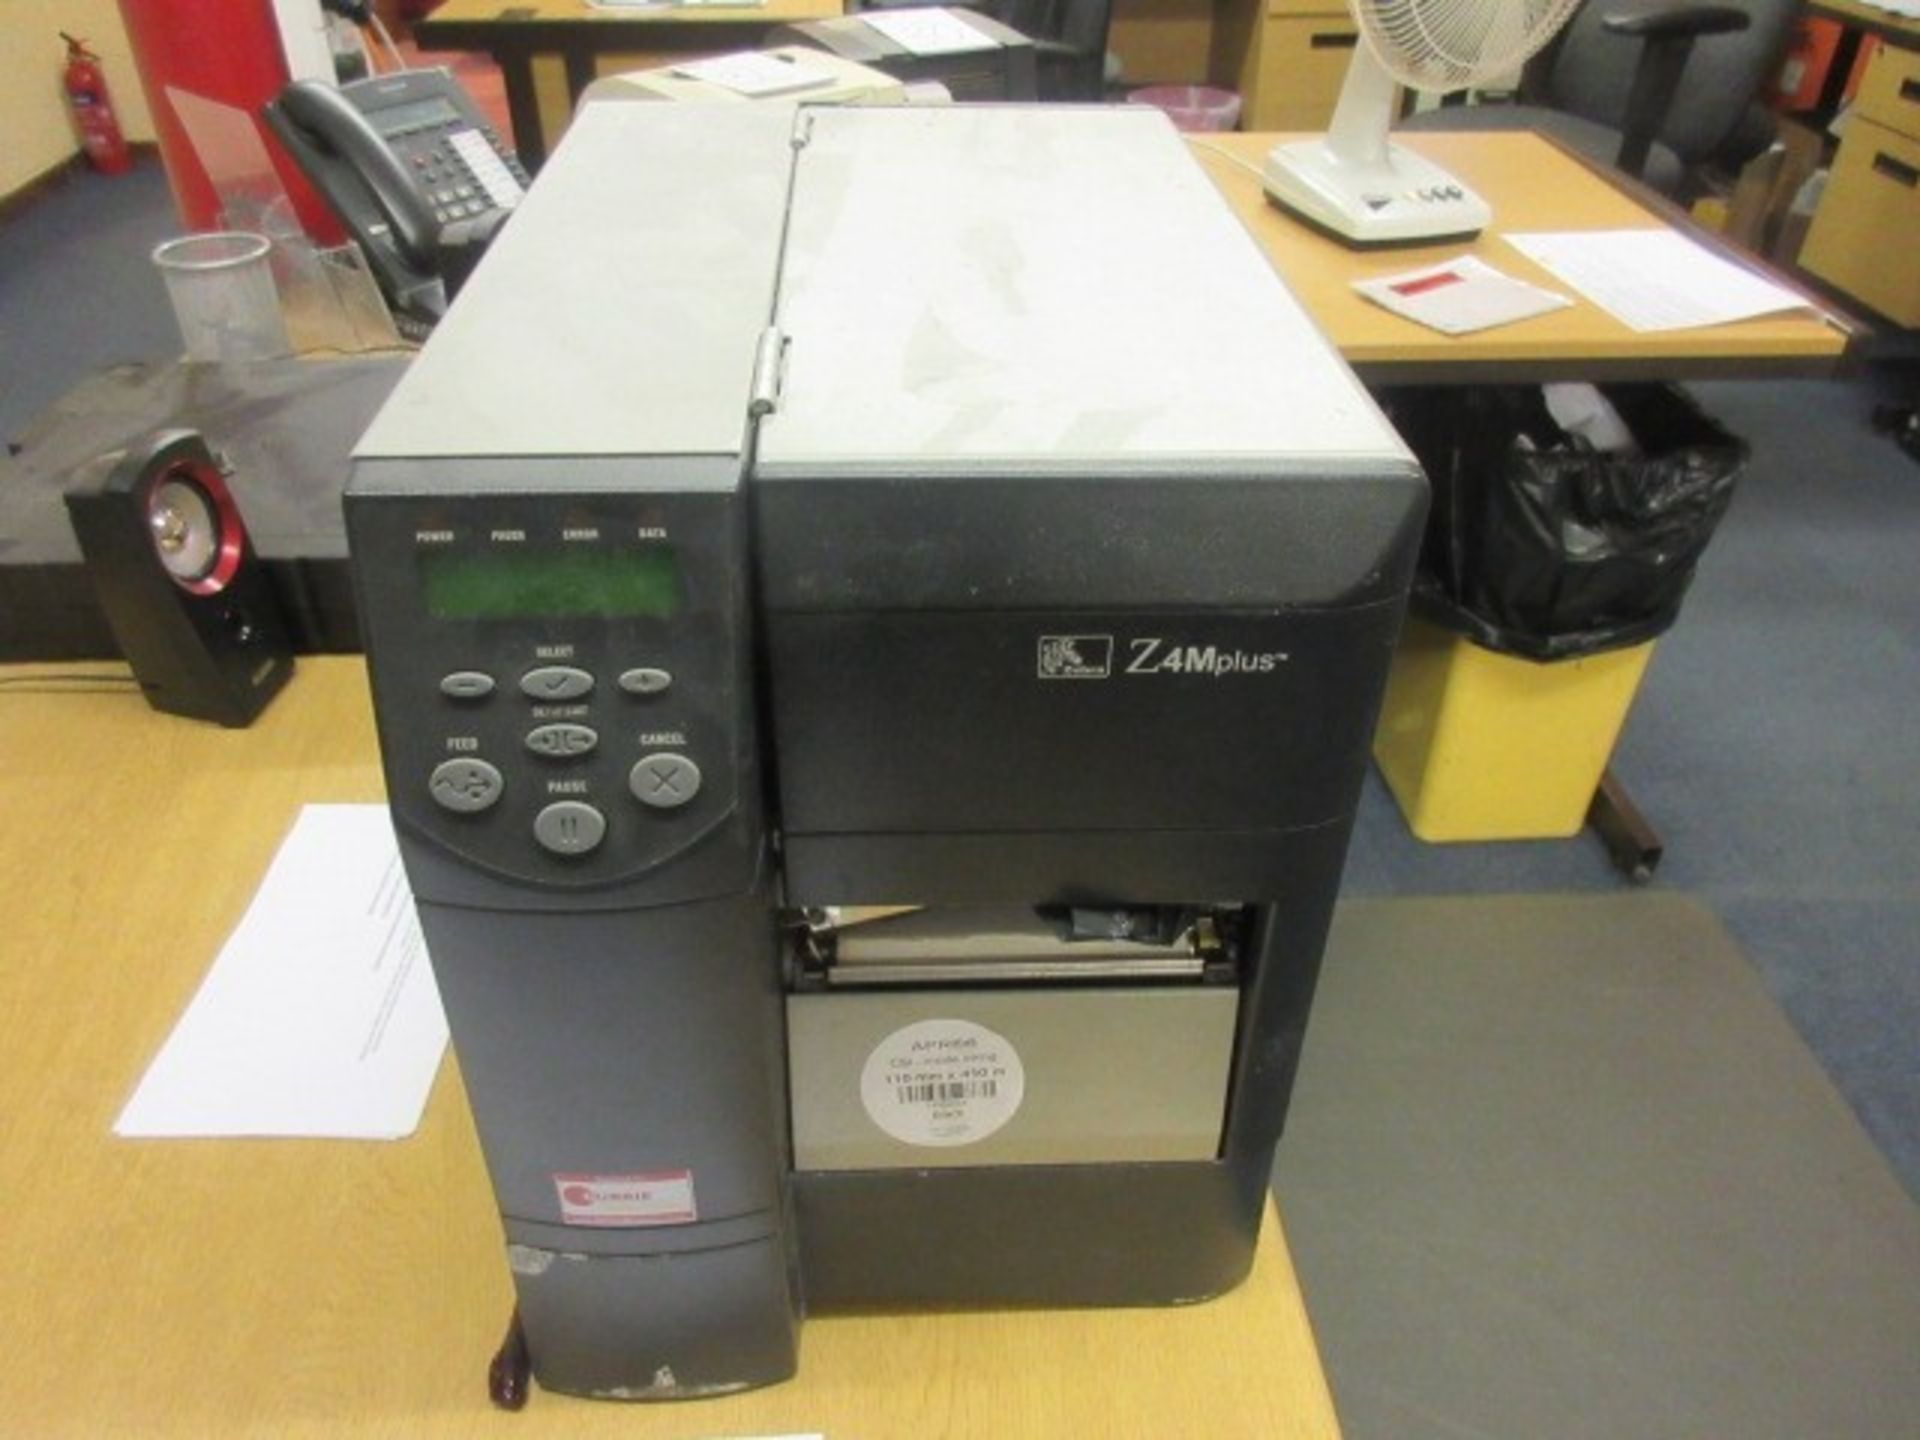 Zebra Z4M Plus thermal label printer. - Image 3 of 4